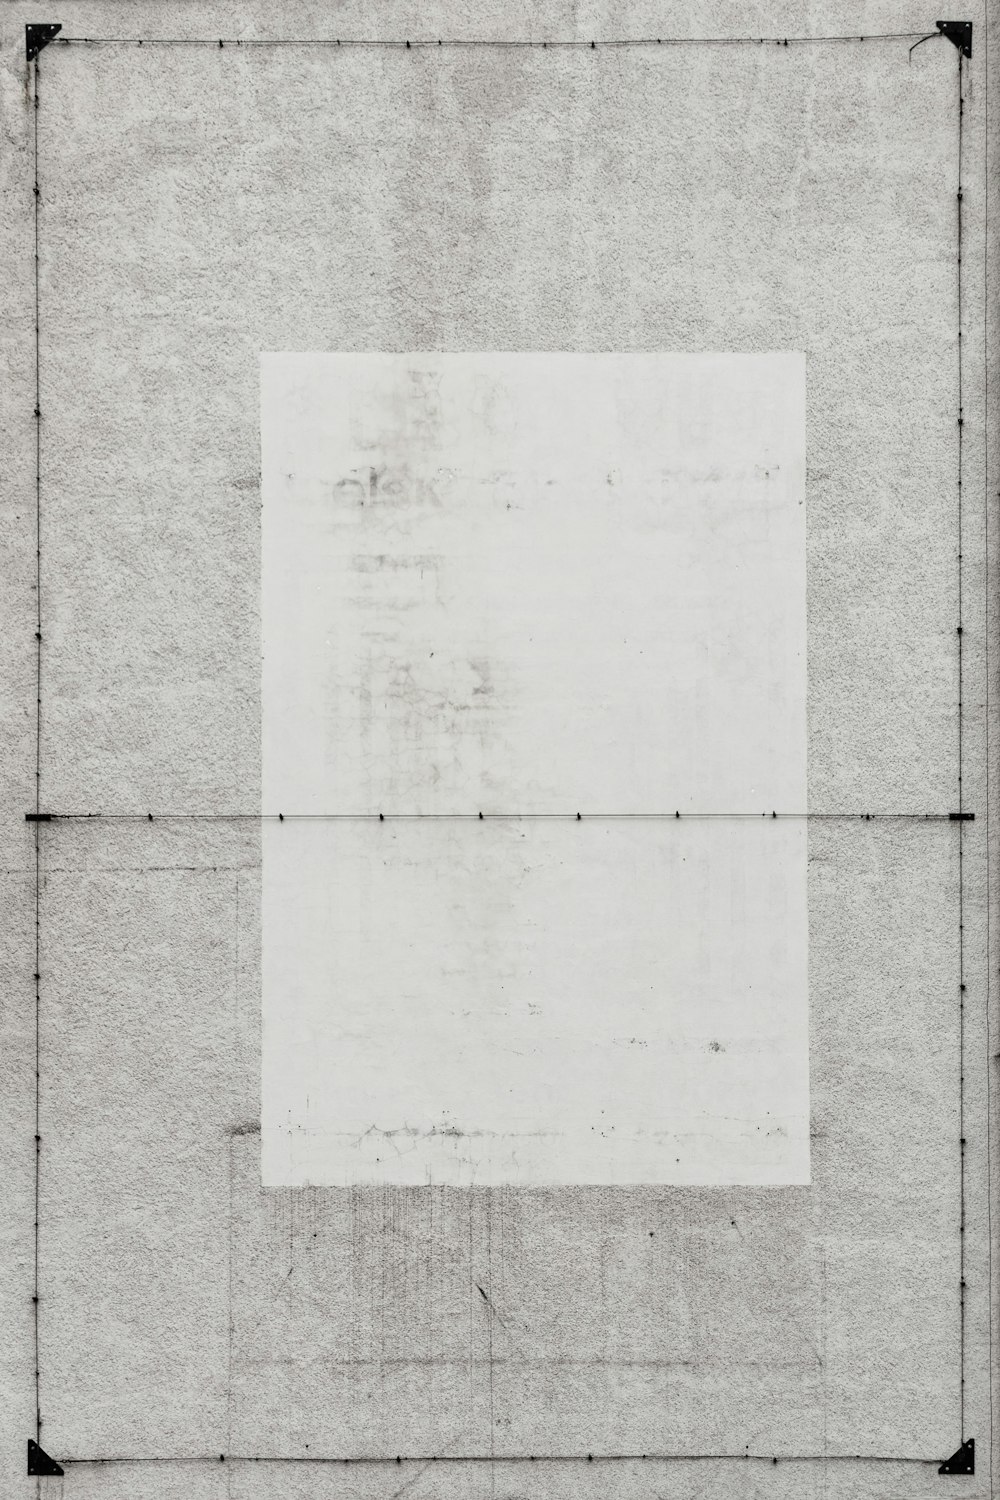 eine Zeichnung eines Quadrats auf einem Blatt Papier